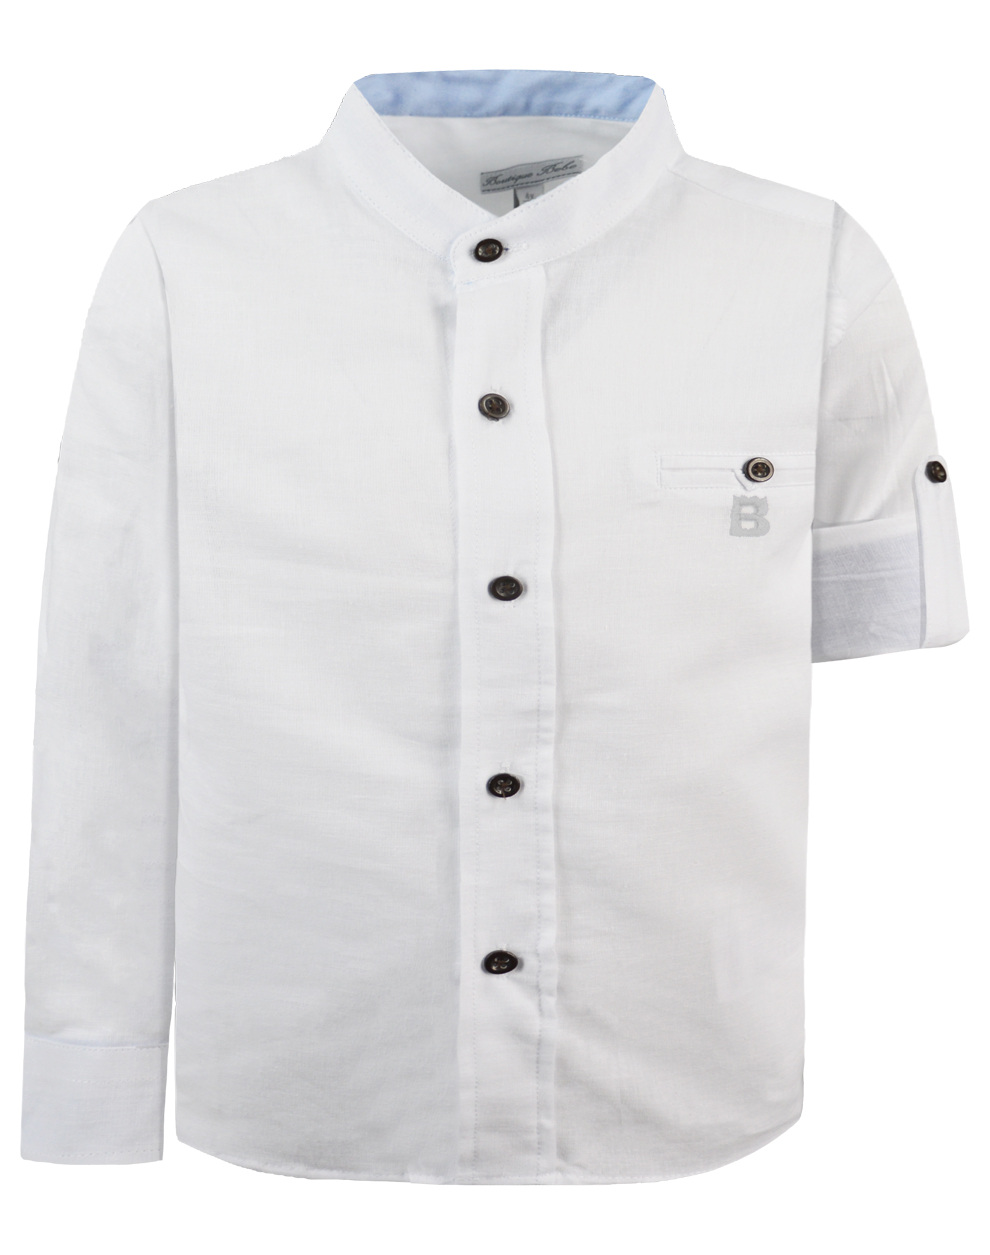 Λινό μακρυμάνικο πουκάμισο με μάο γιακά για αγόρι για επίσημες εμφανίσεις | ΛΕΥΚΟ ΑΓΟΡΙ 1-6>Πουκάμισο